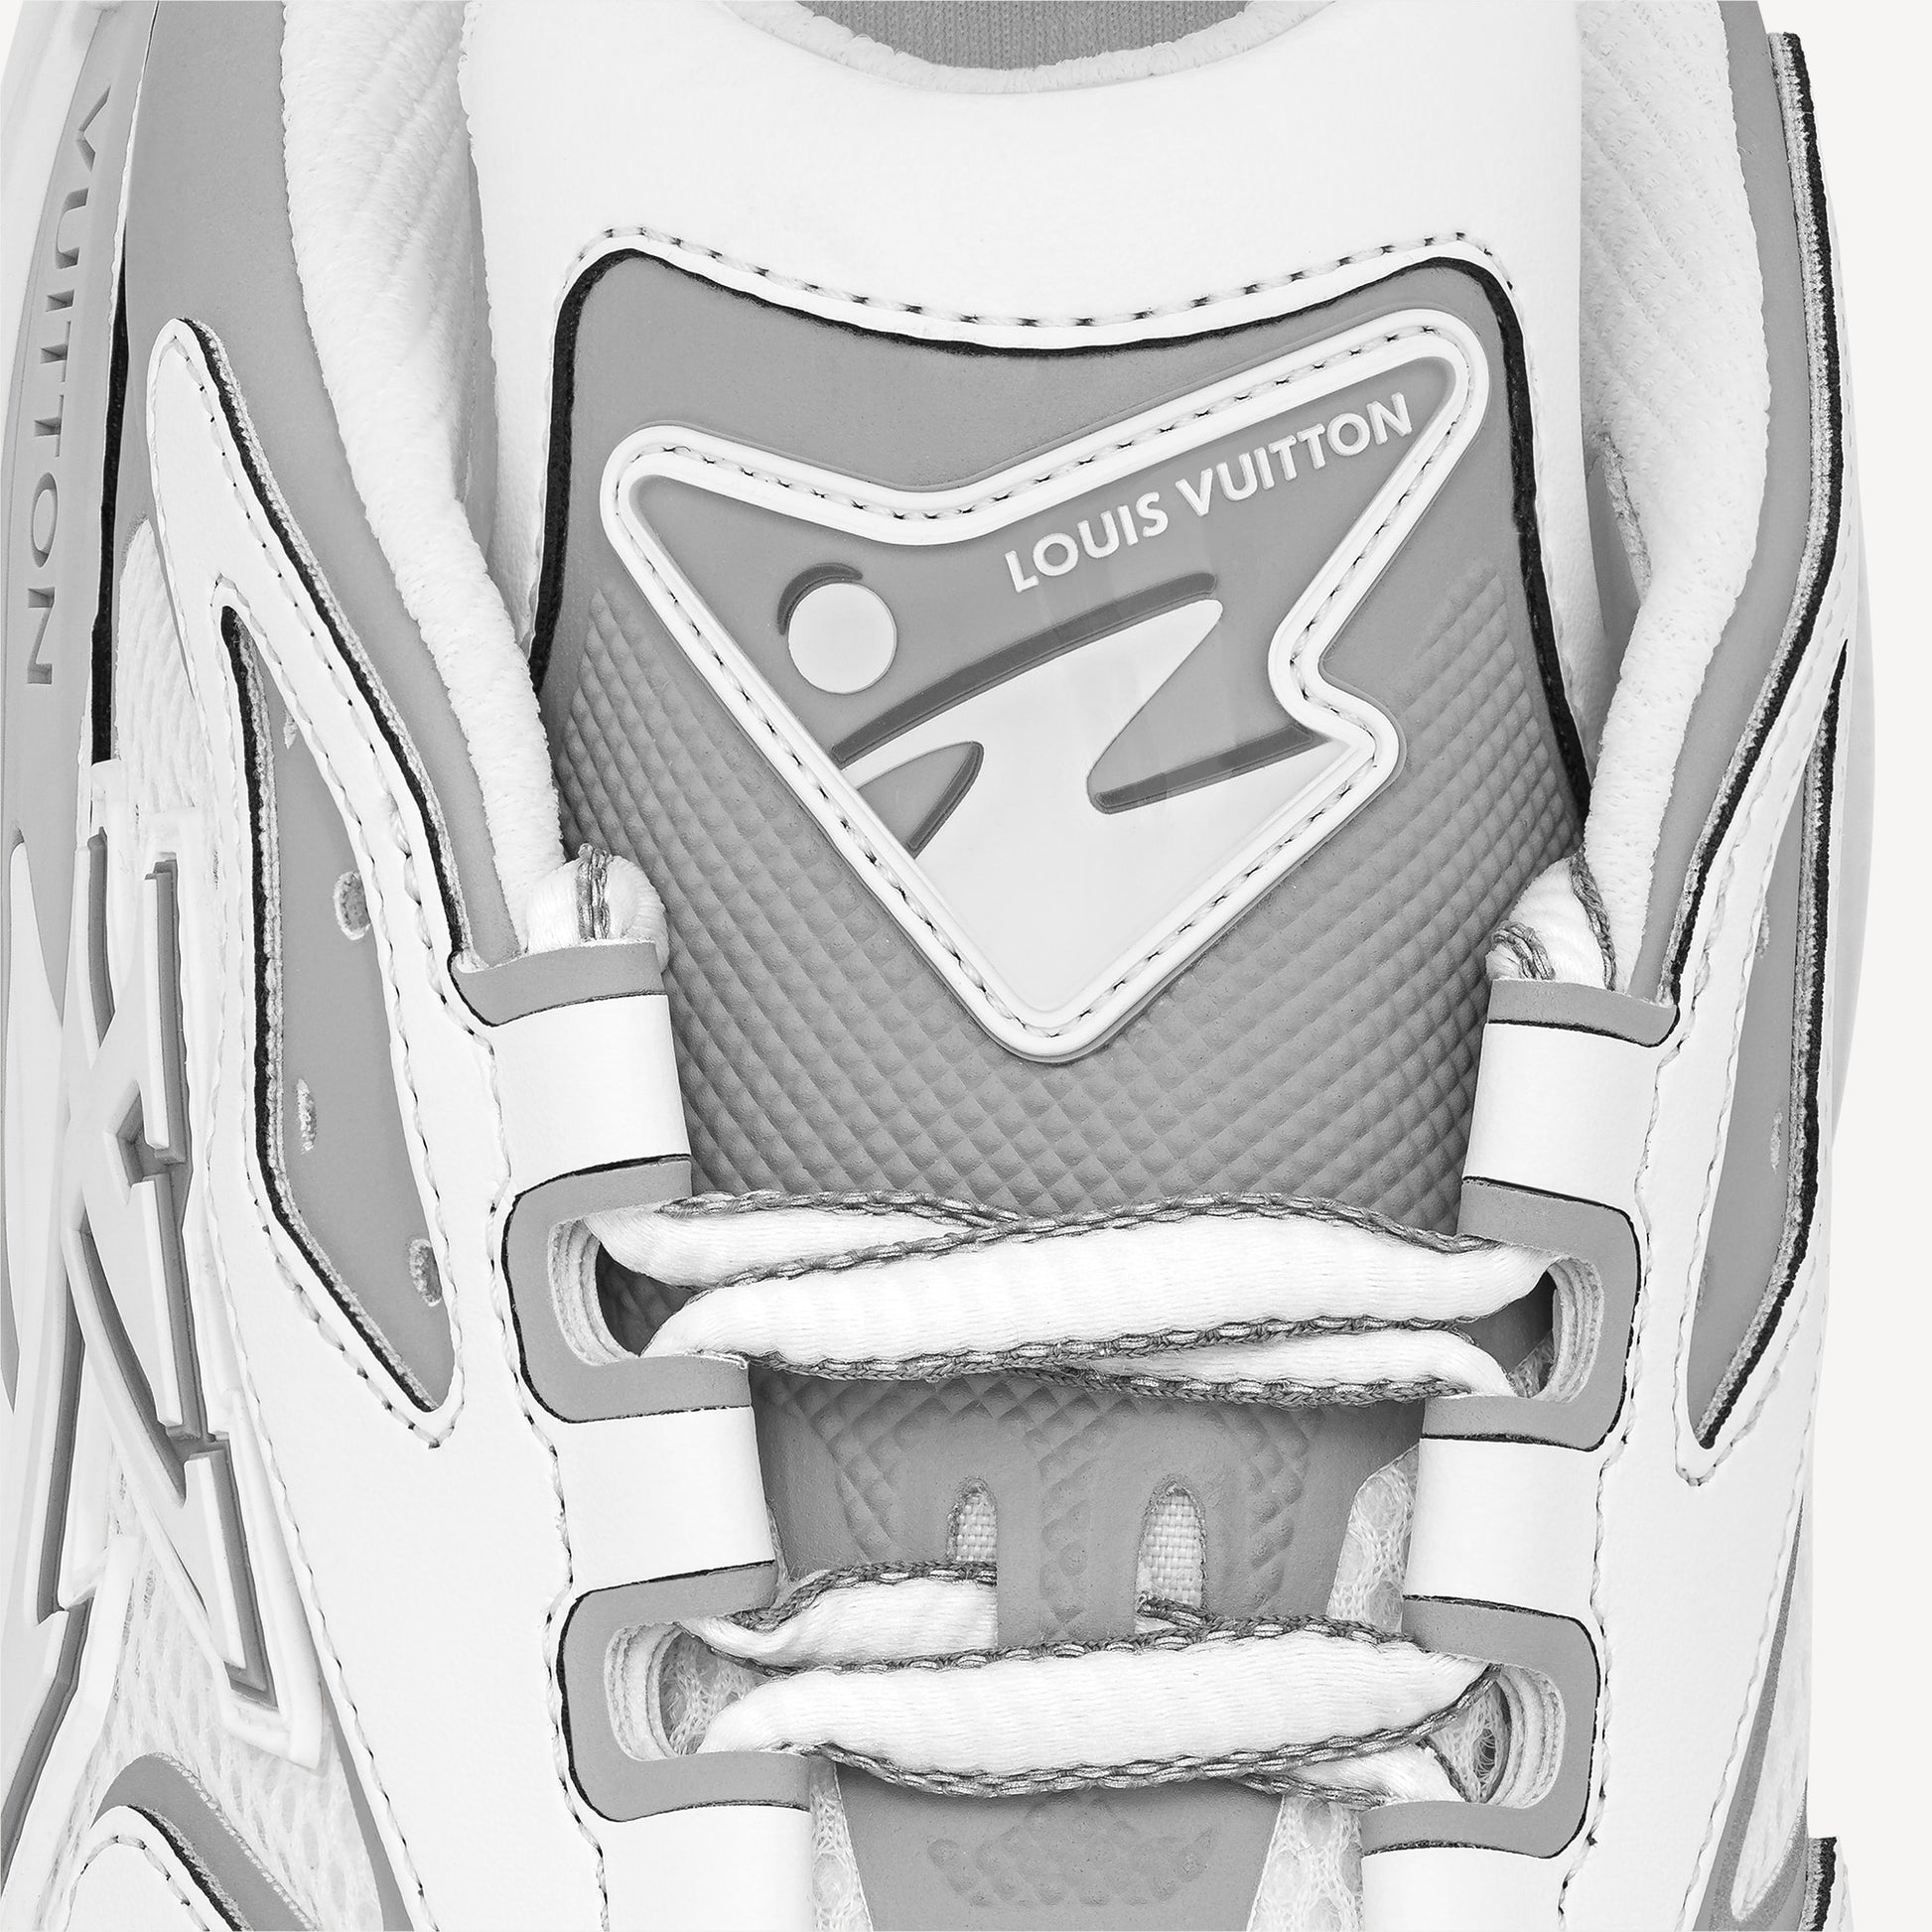 Louis Vuitton grey Runner Tatic Sneakers